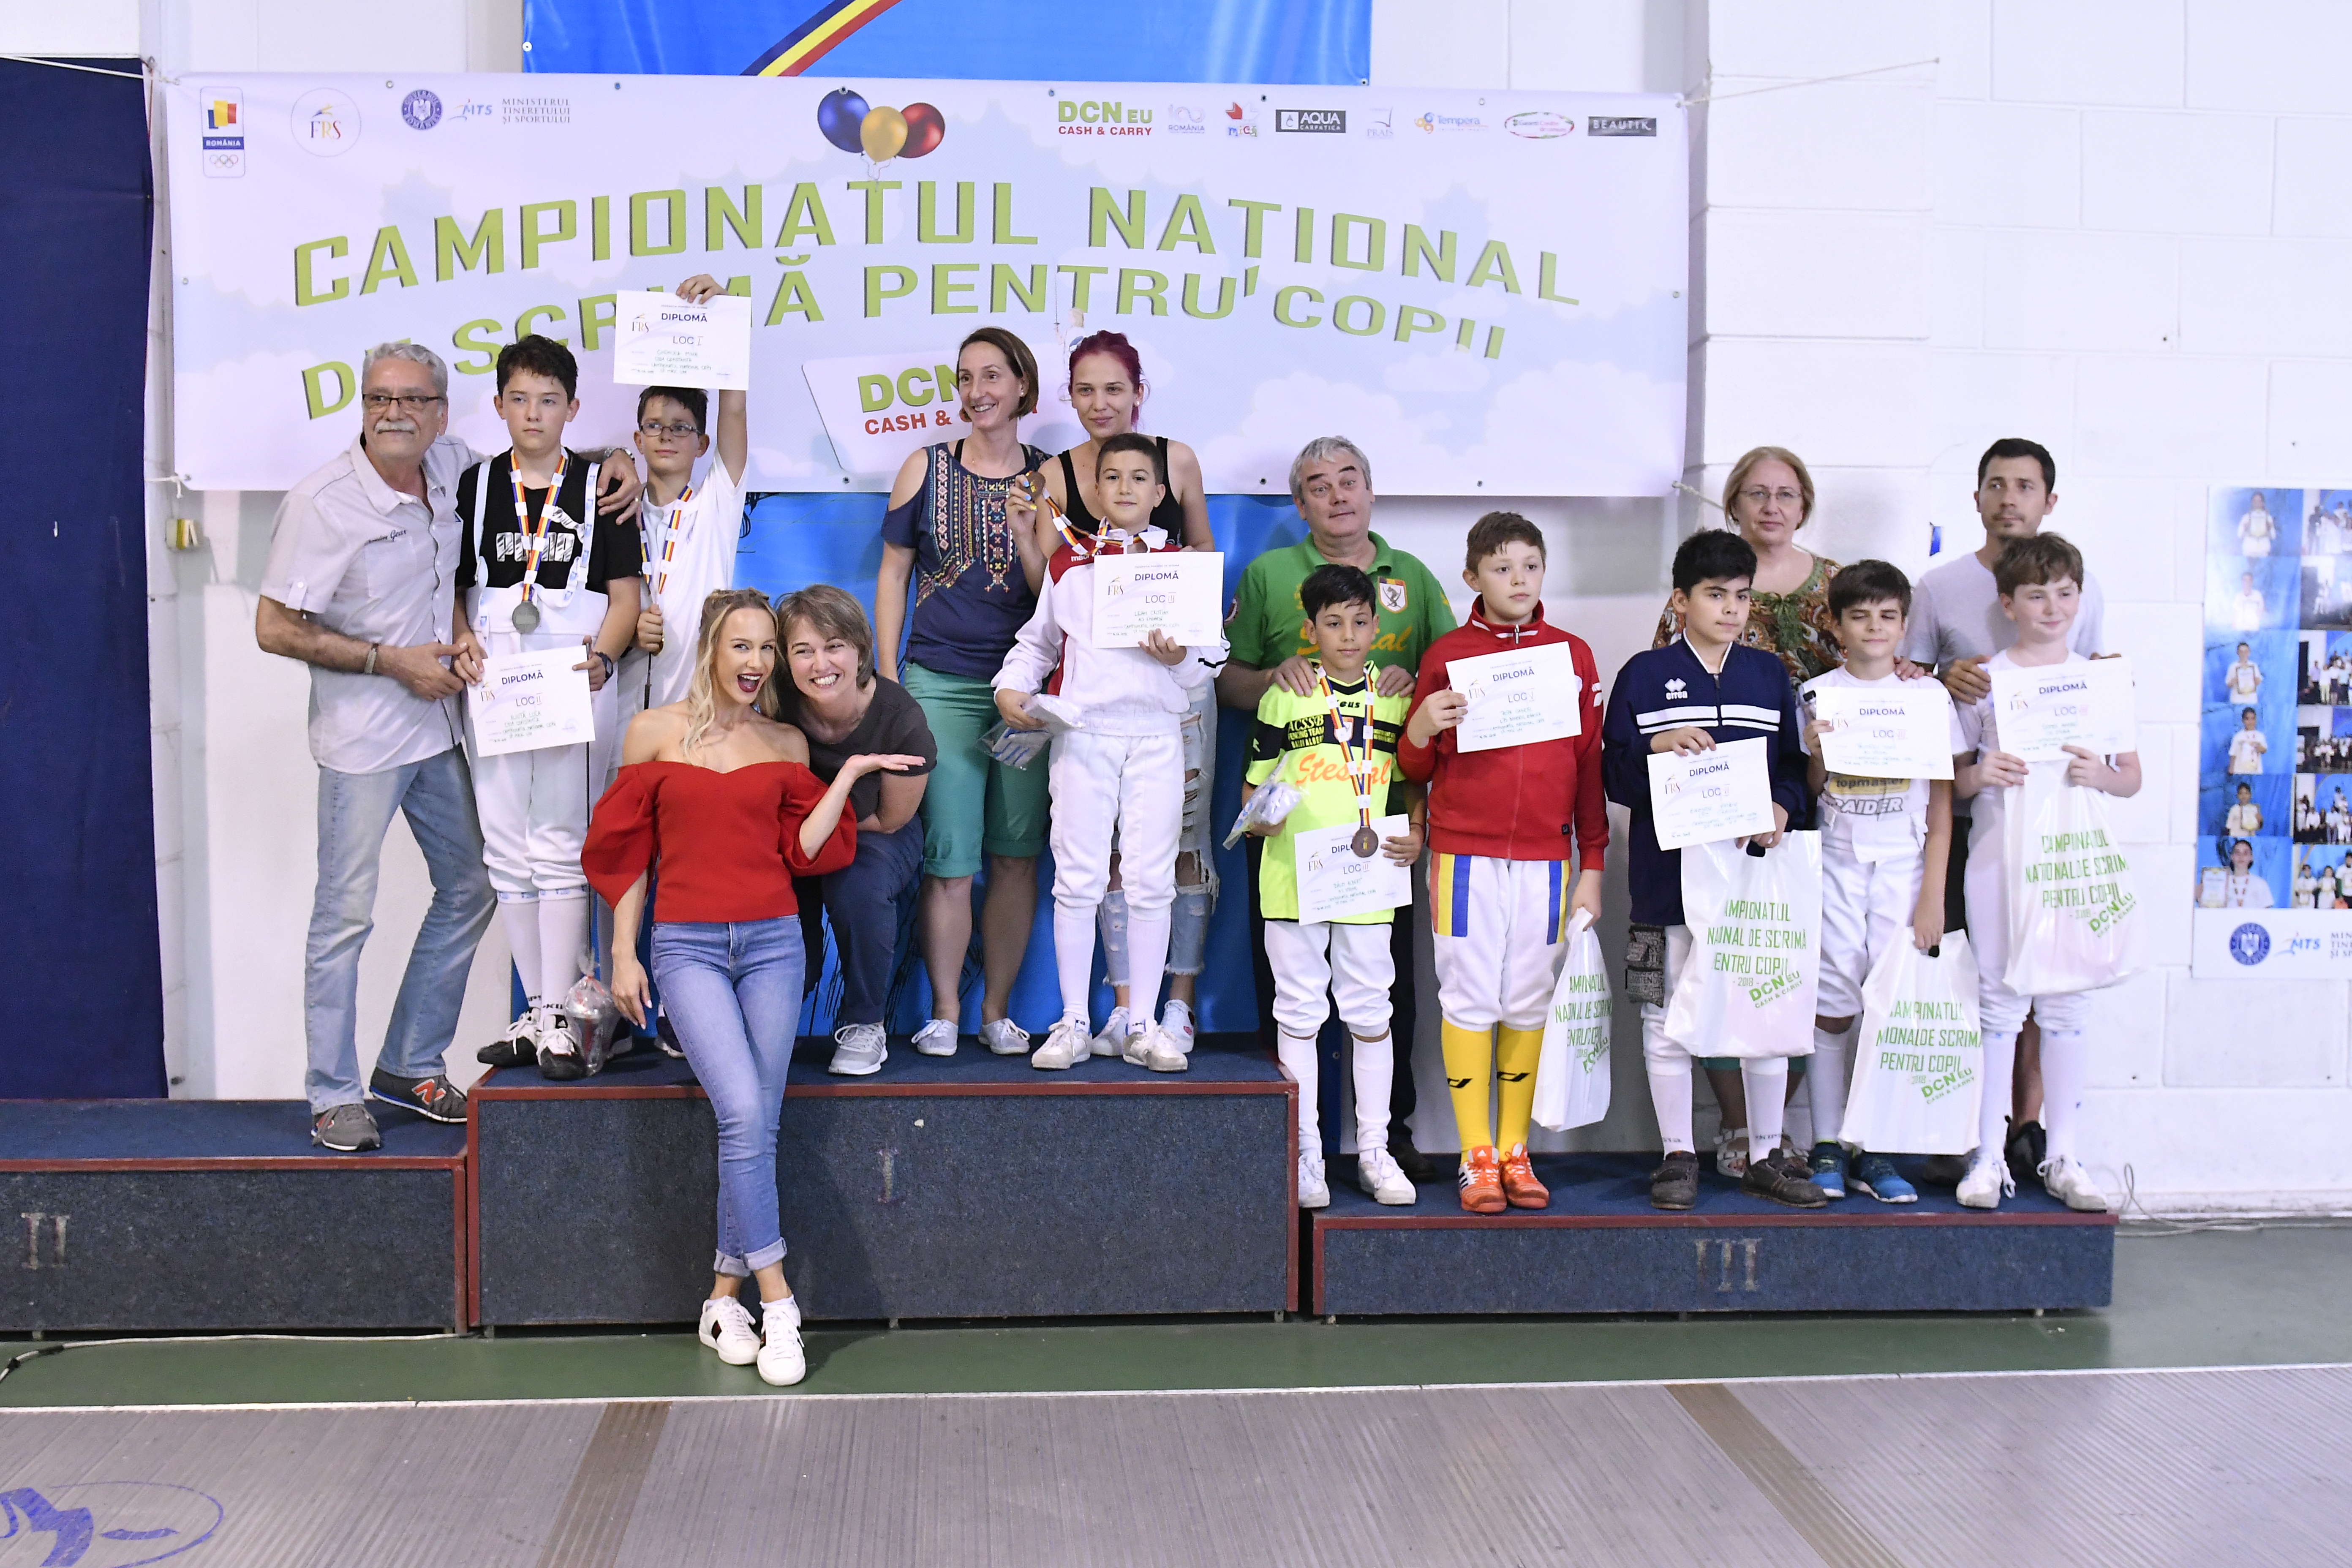 Campionatul Național de scrimă pentru copii, ediția 2018, ziua 1, proba 2: spadă masculin 10-11 ani